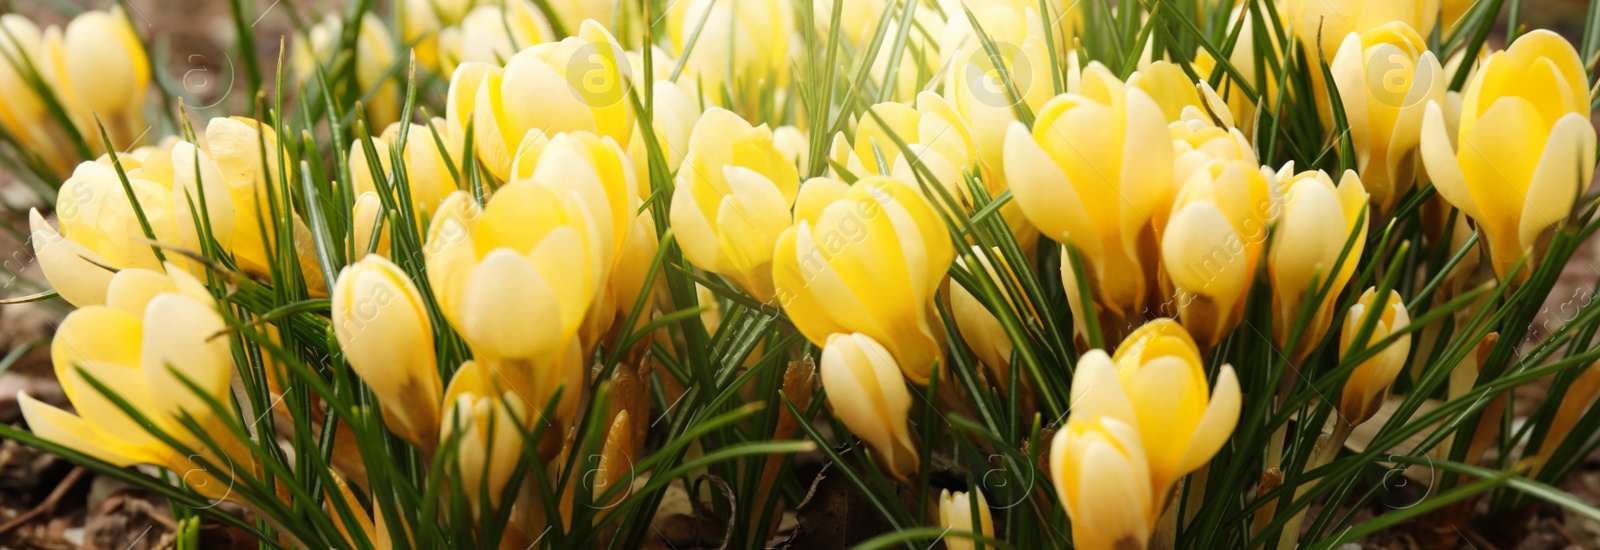 Image of Beautiful yellow crocus flowers growing in garden. Banner design 